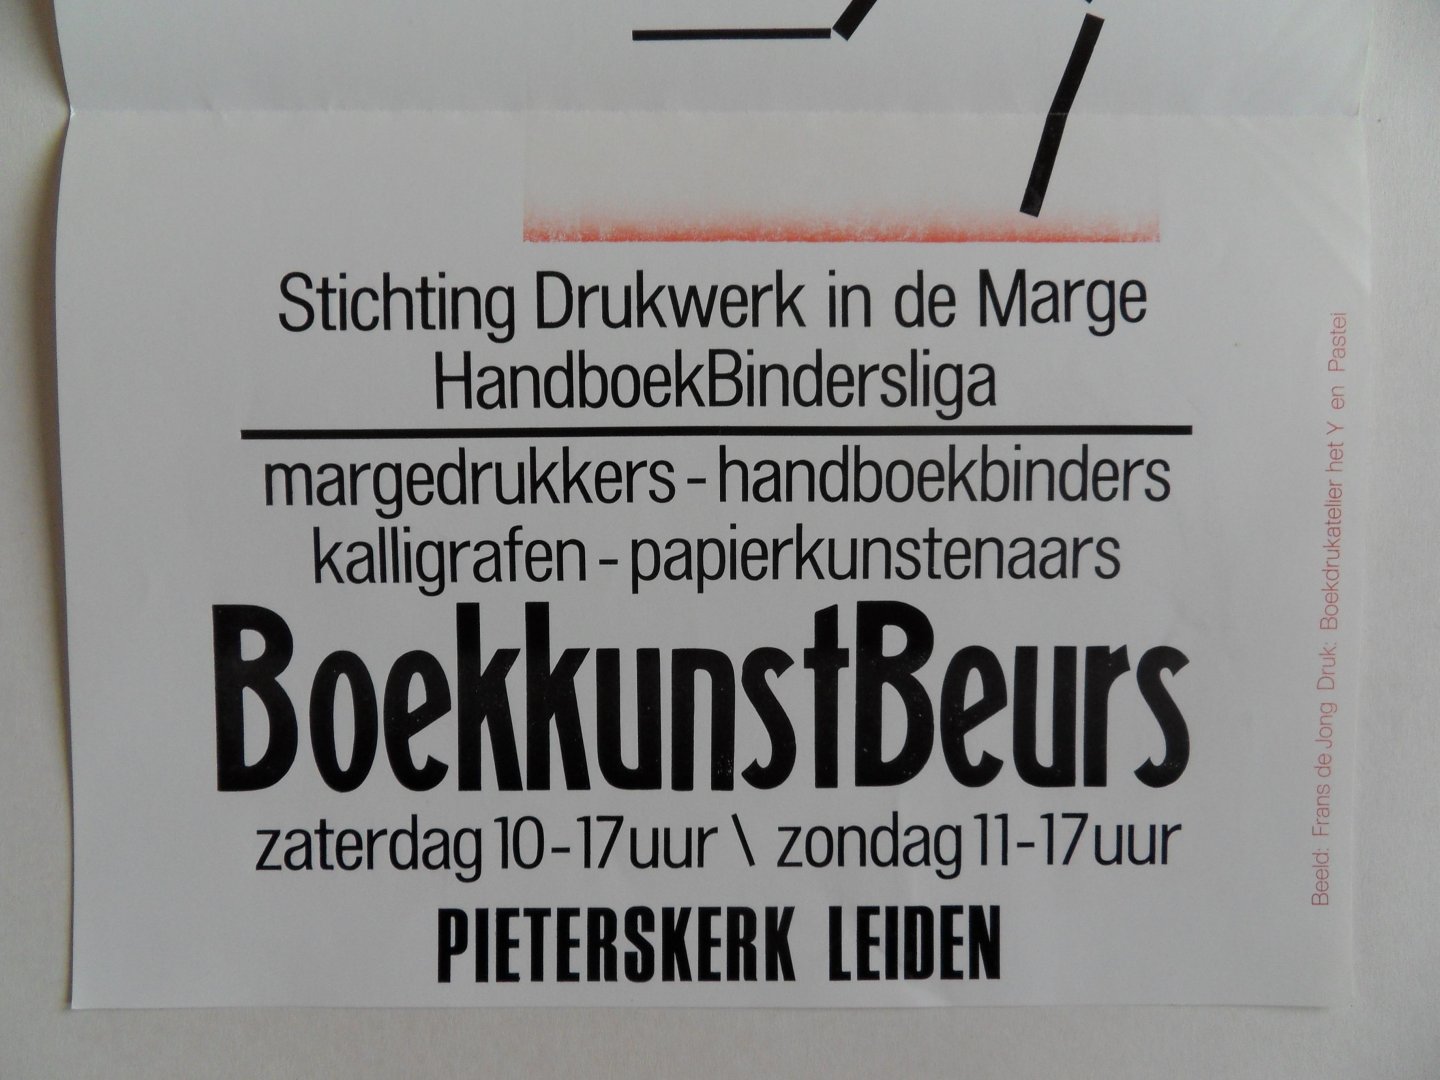 Jong, Frans de (beeld). - 17 en 18 november 2007. - Stichting Drukwerk in de Marge. - Handboekbindersliga - Pieterskerk Leiden.